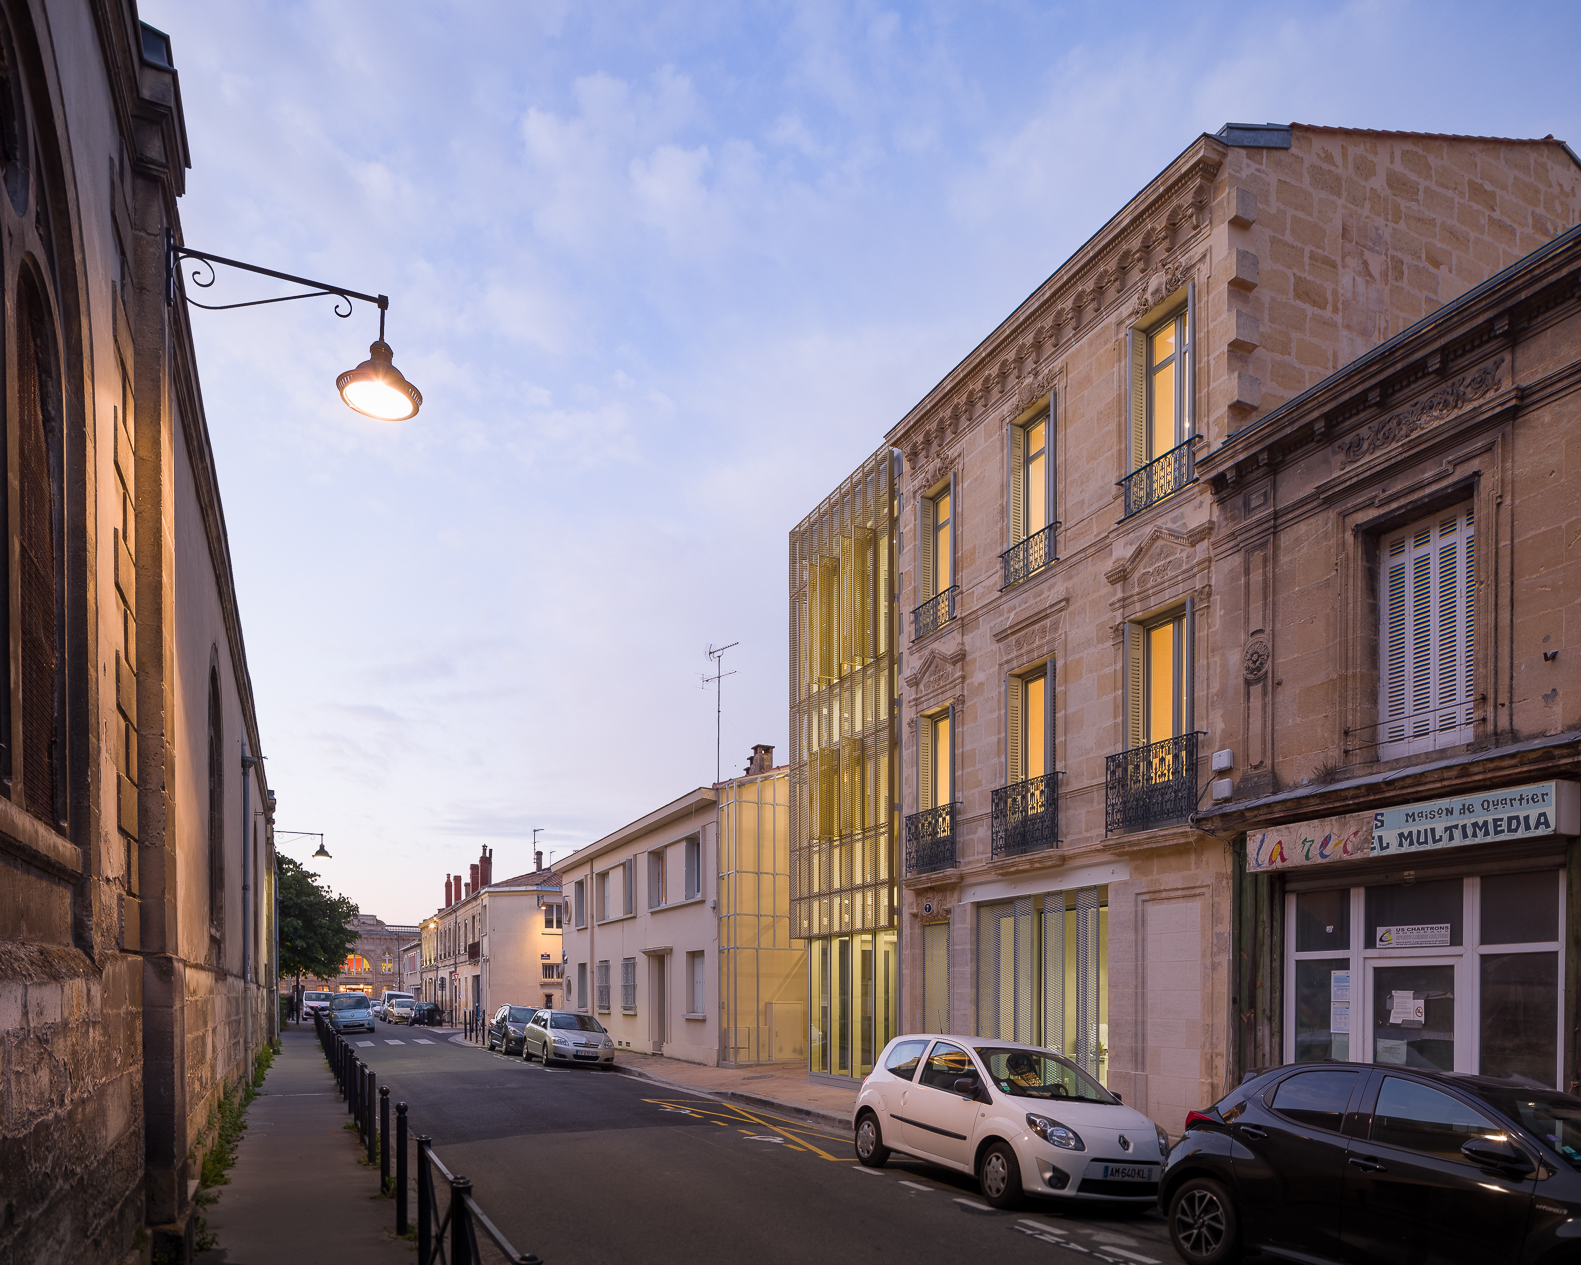 Maison de quartier de Bordeaux (1)